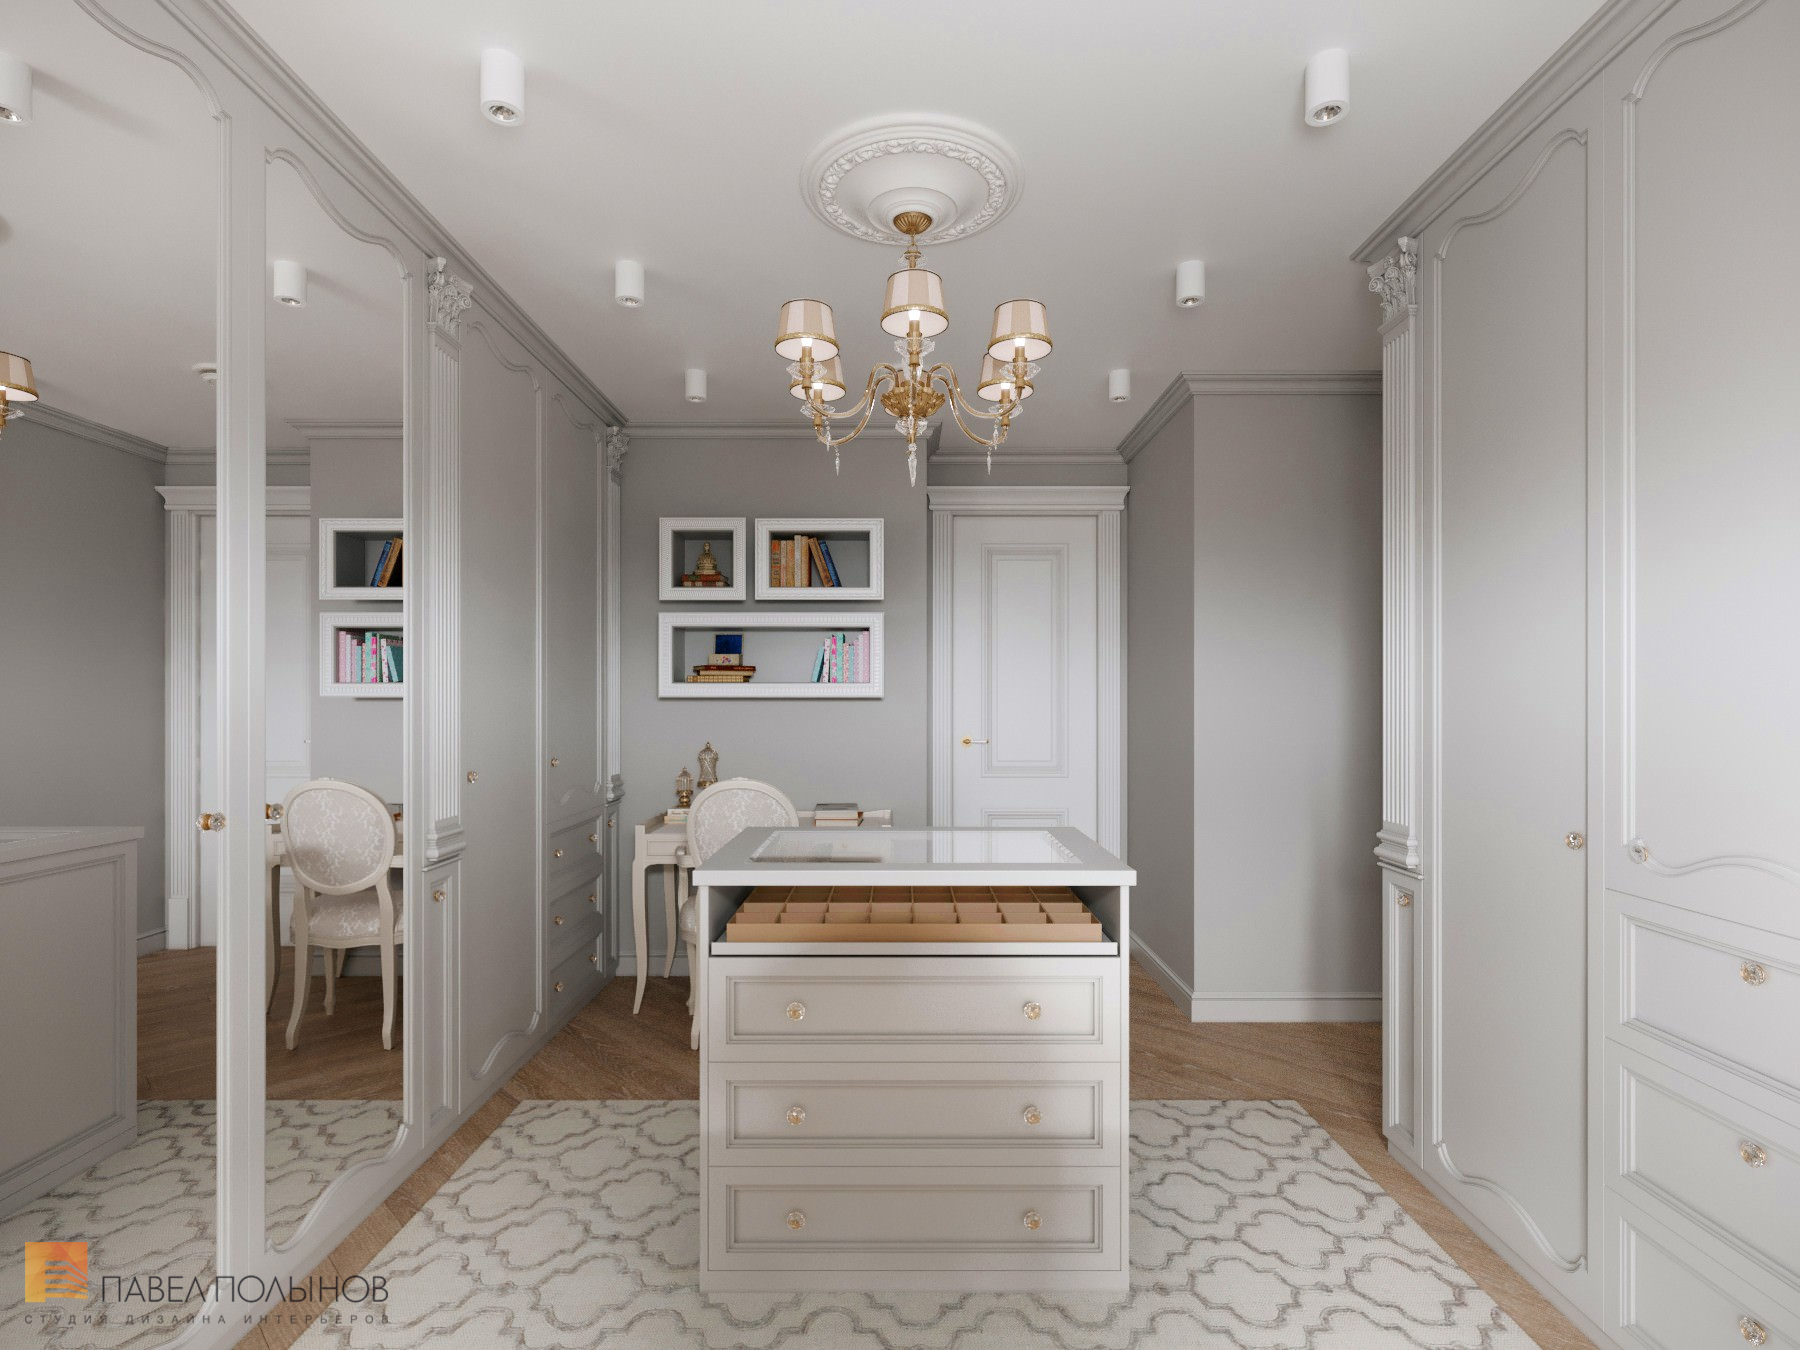 Фото дизайн интерьера гардеробной комнаты из проекта «Дизайн квартиры в стиле современной классики, ЖК «Riverside», 180 кв.м.»